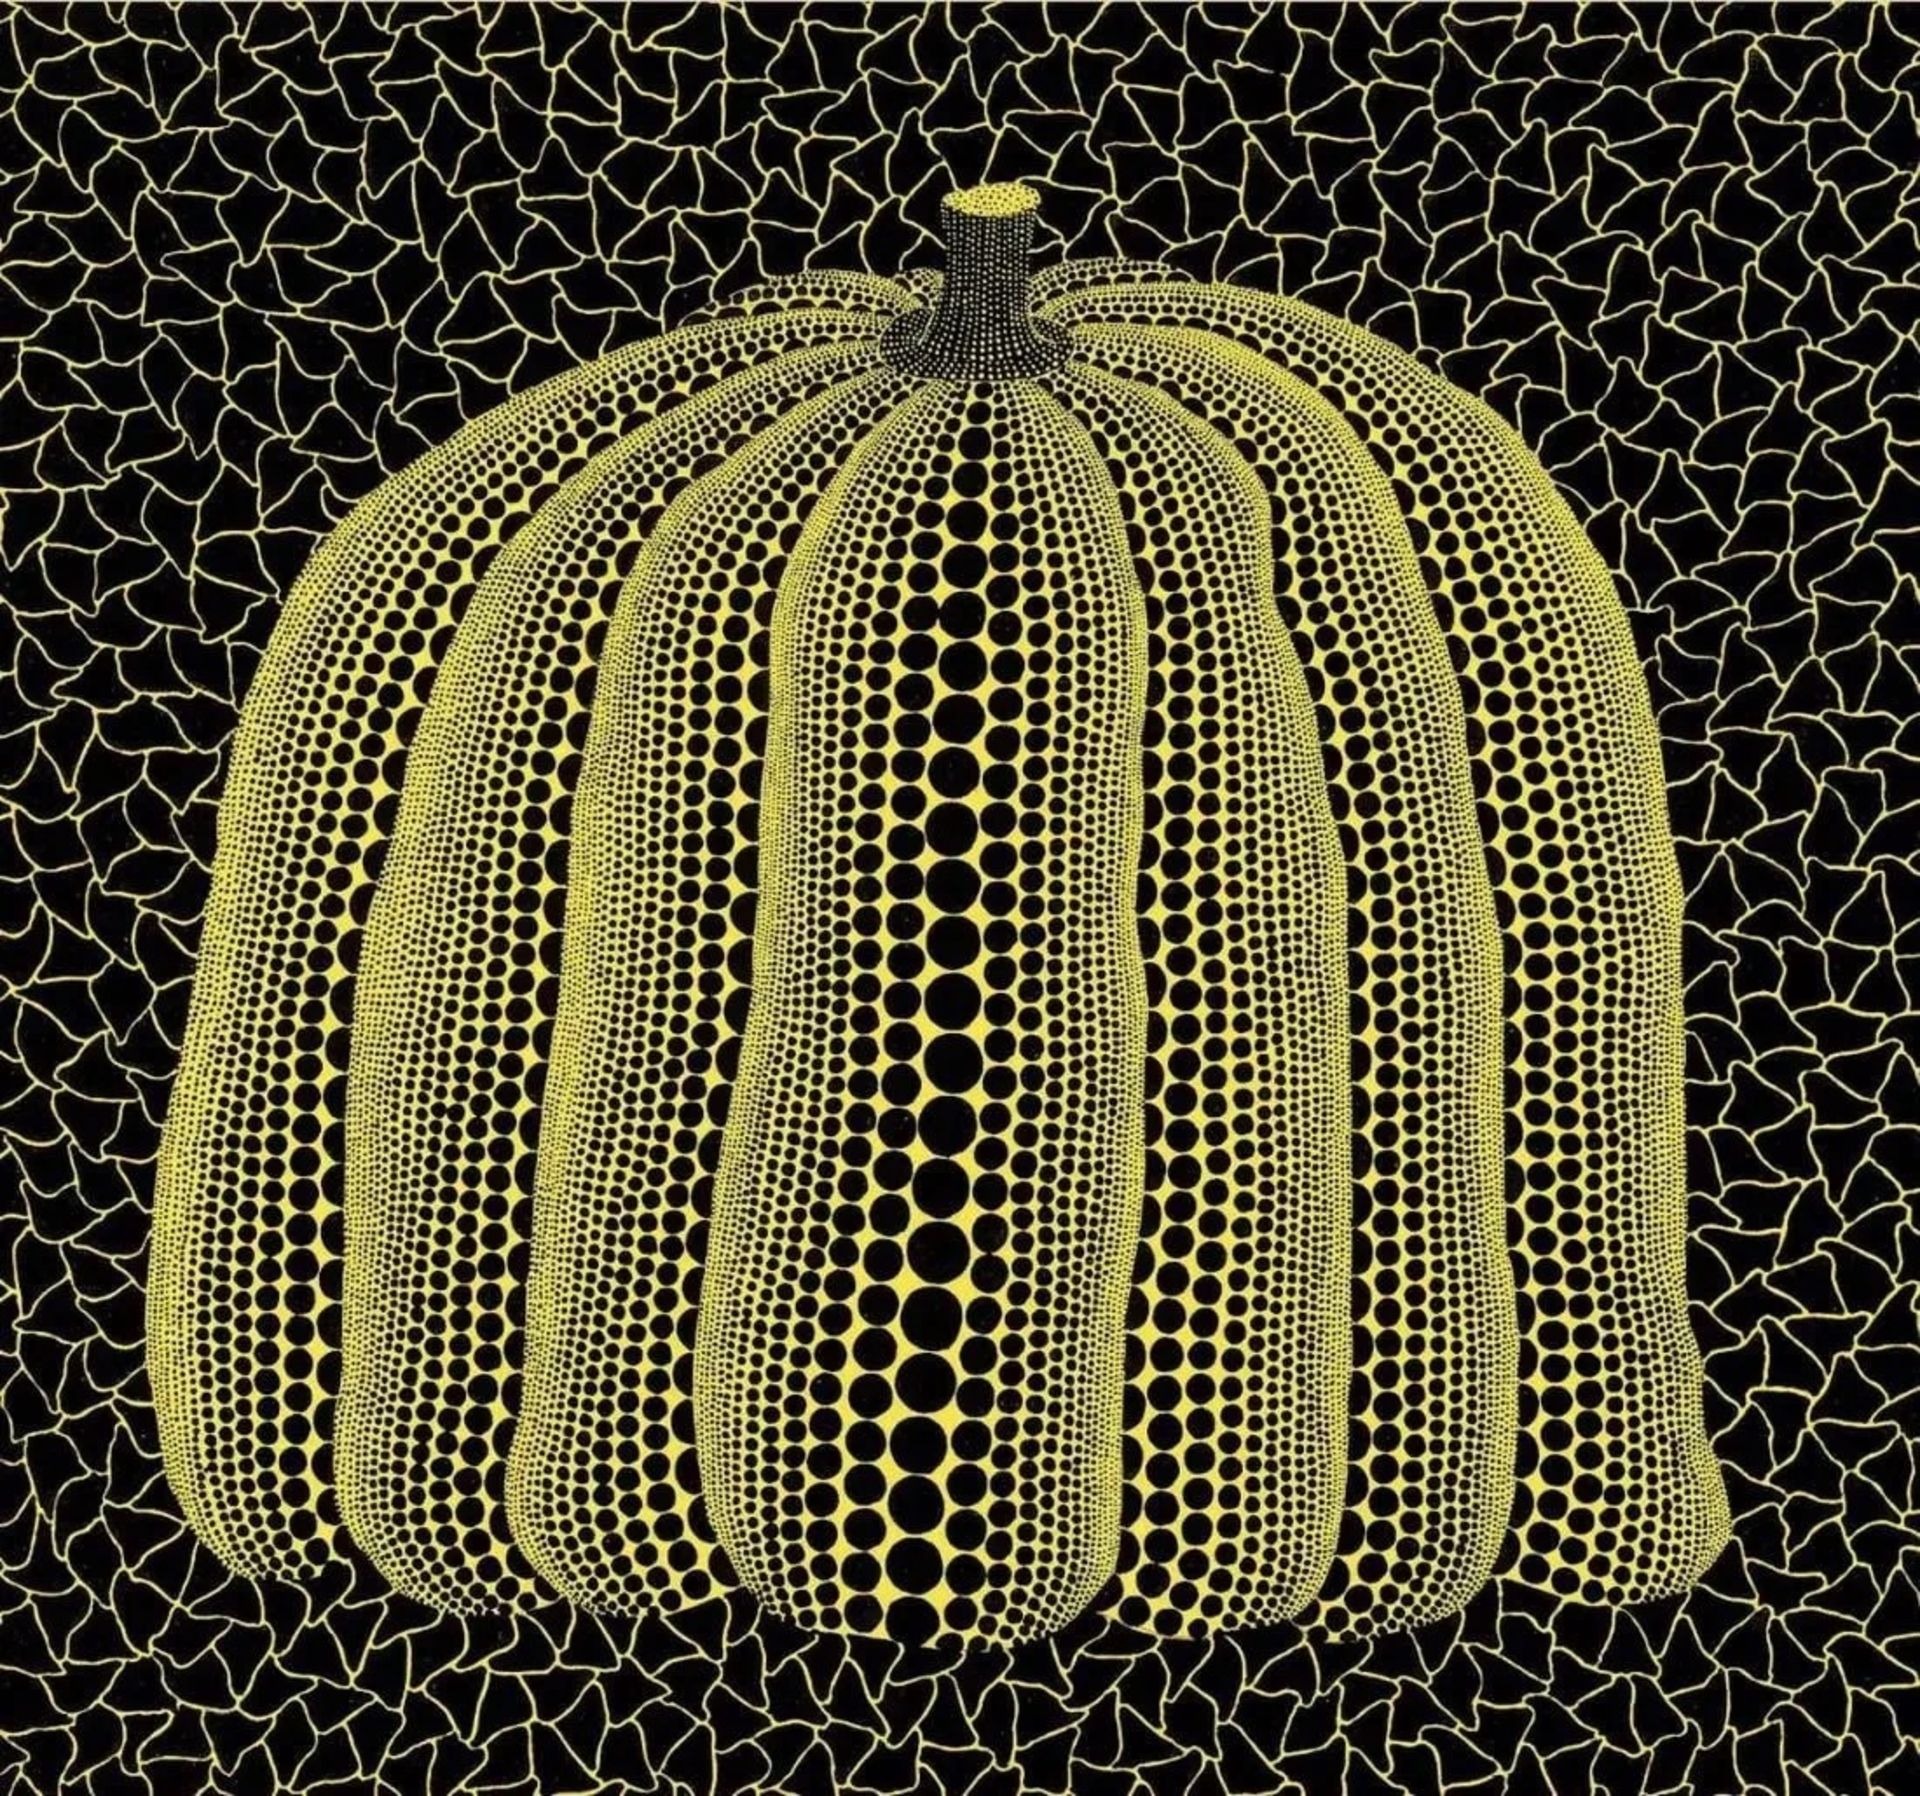 Yayoi Kusama "Yellow Pumpkin" Offset Lithograph